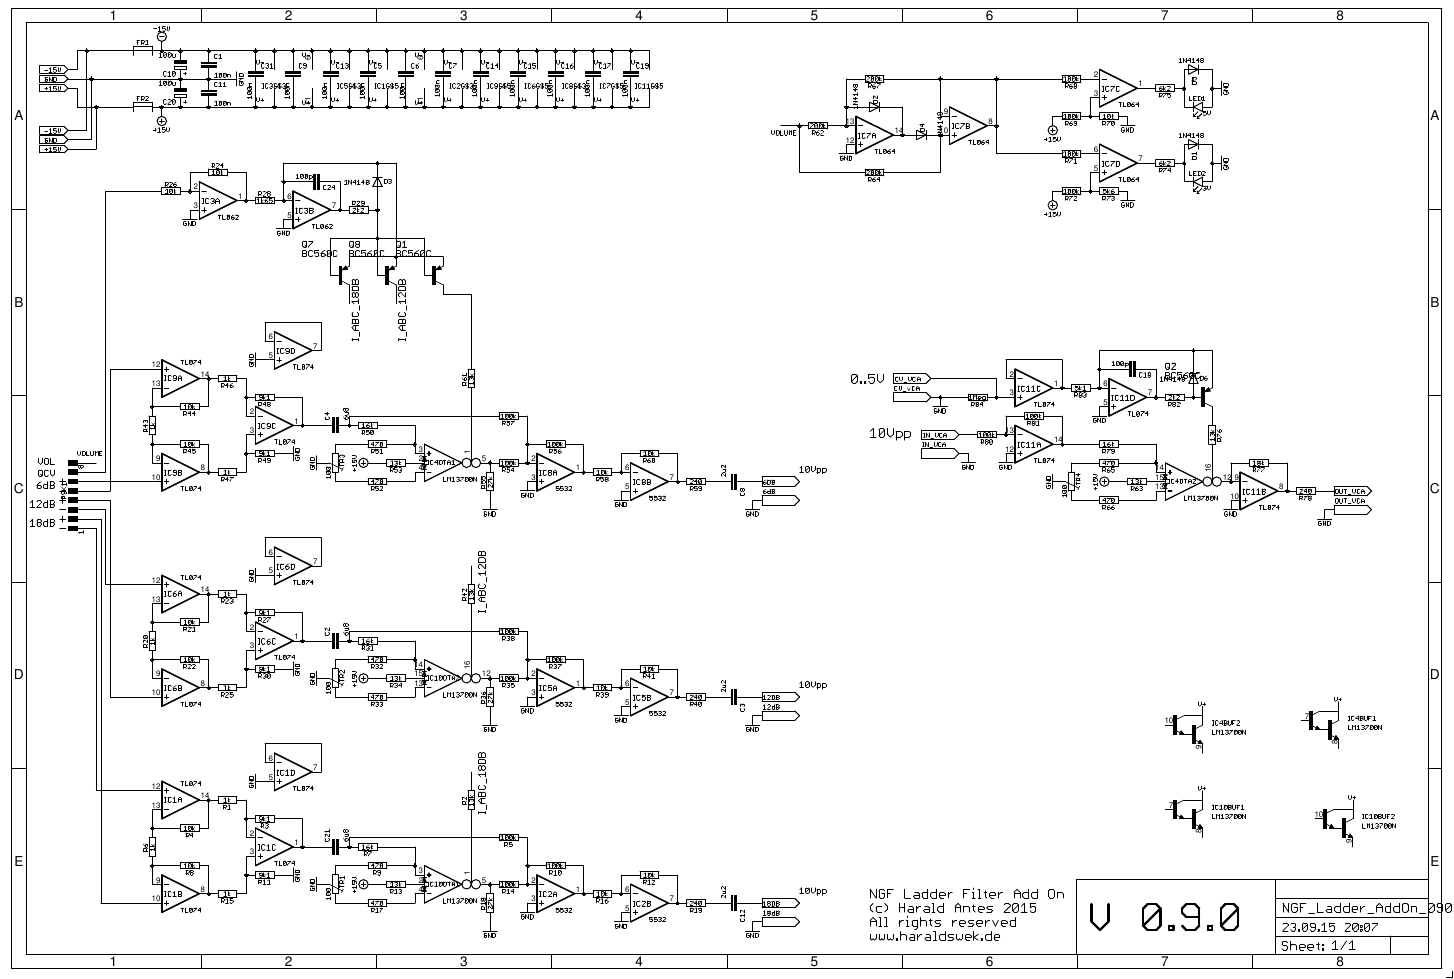 Moog Ladder filter AddOn schematic